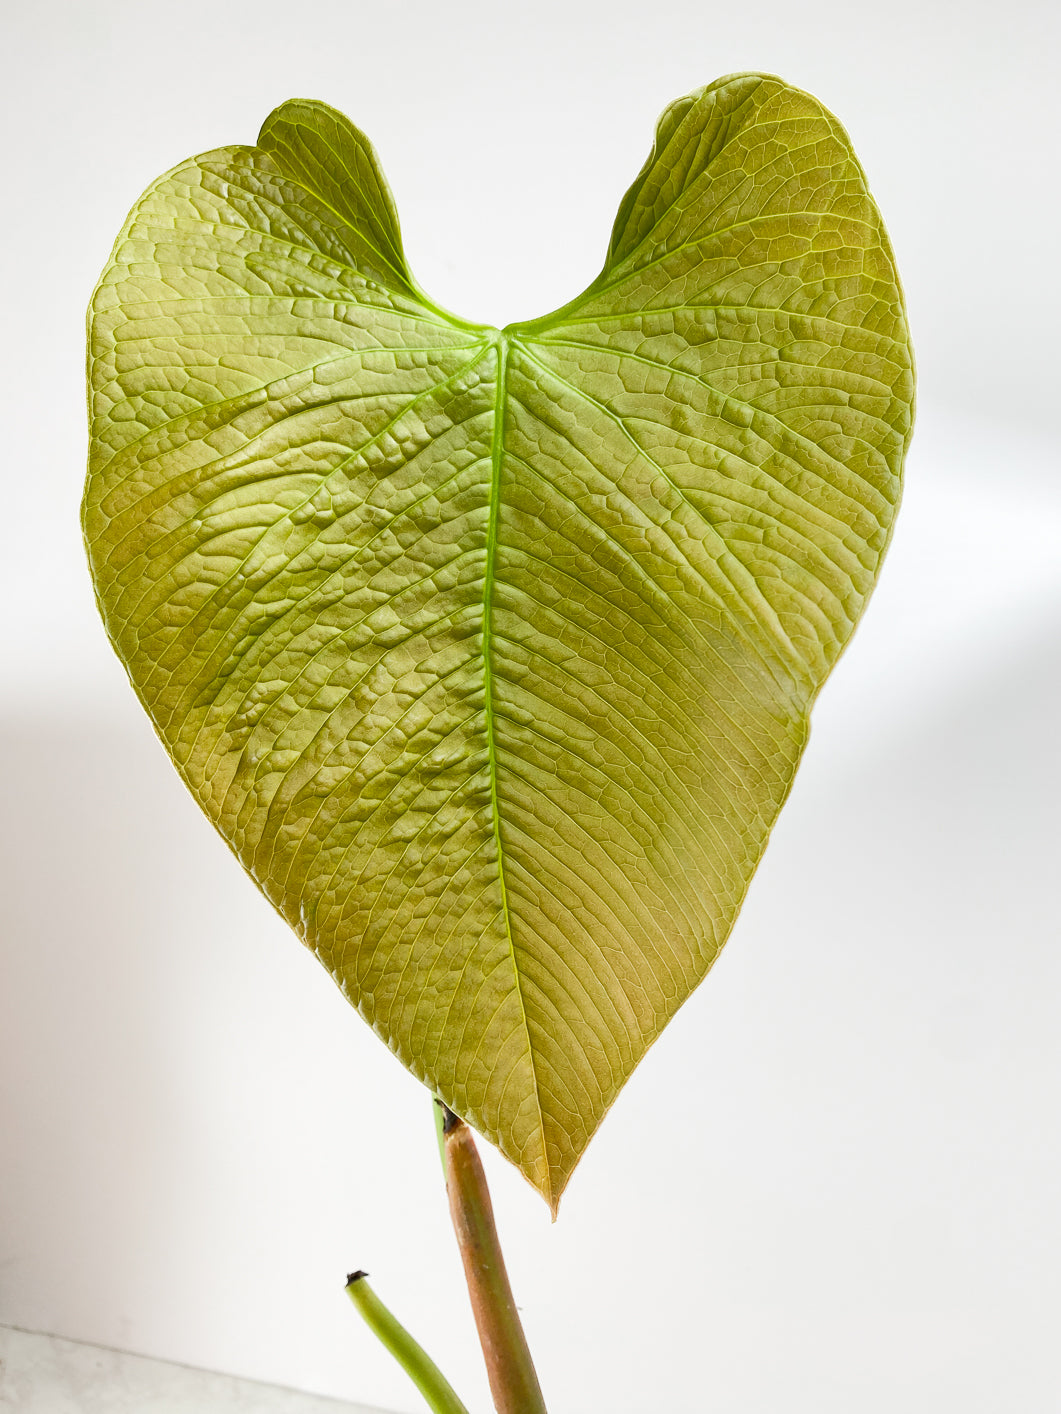 Anthurium Rugulosum "Quilted heart"